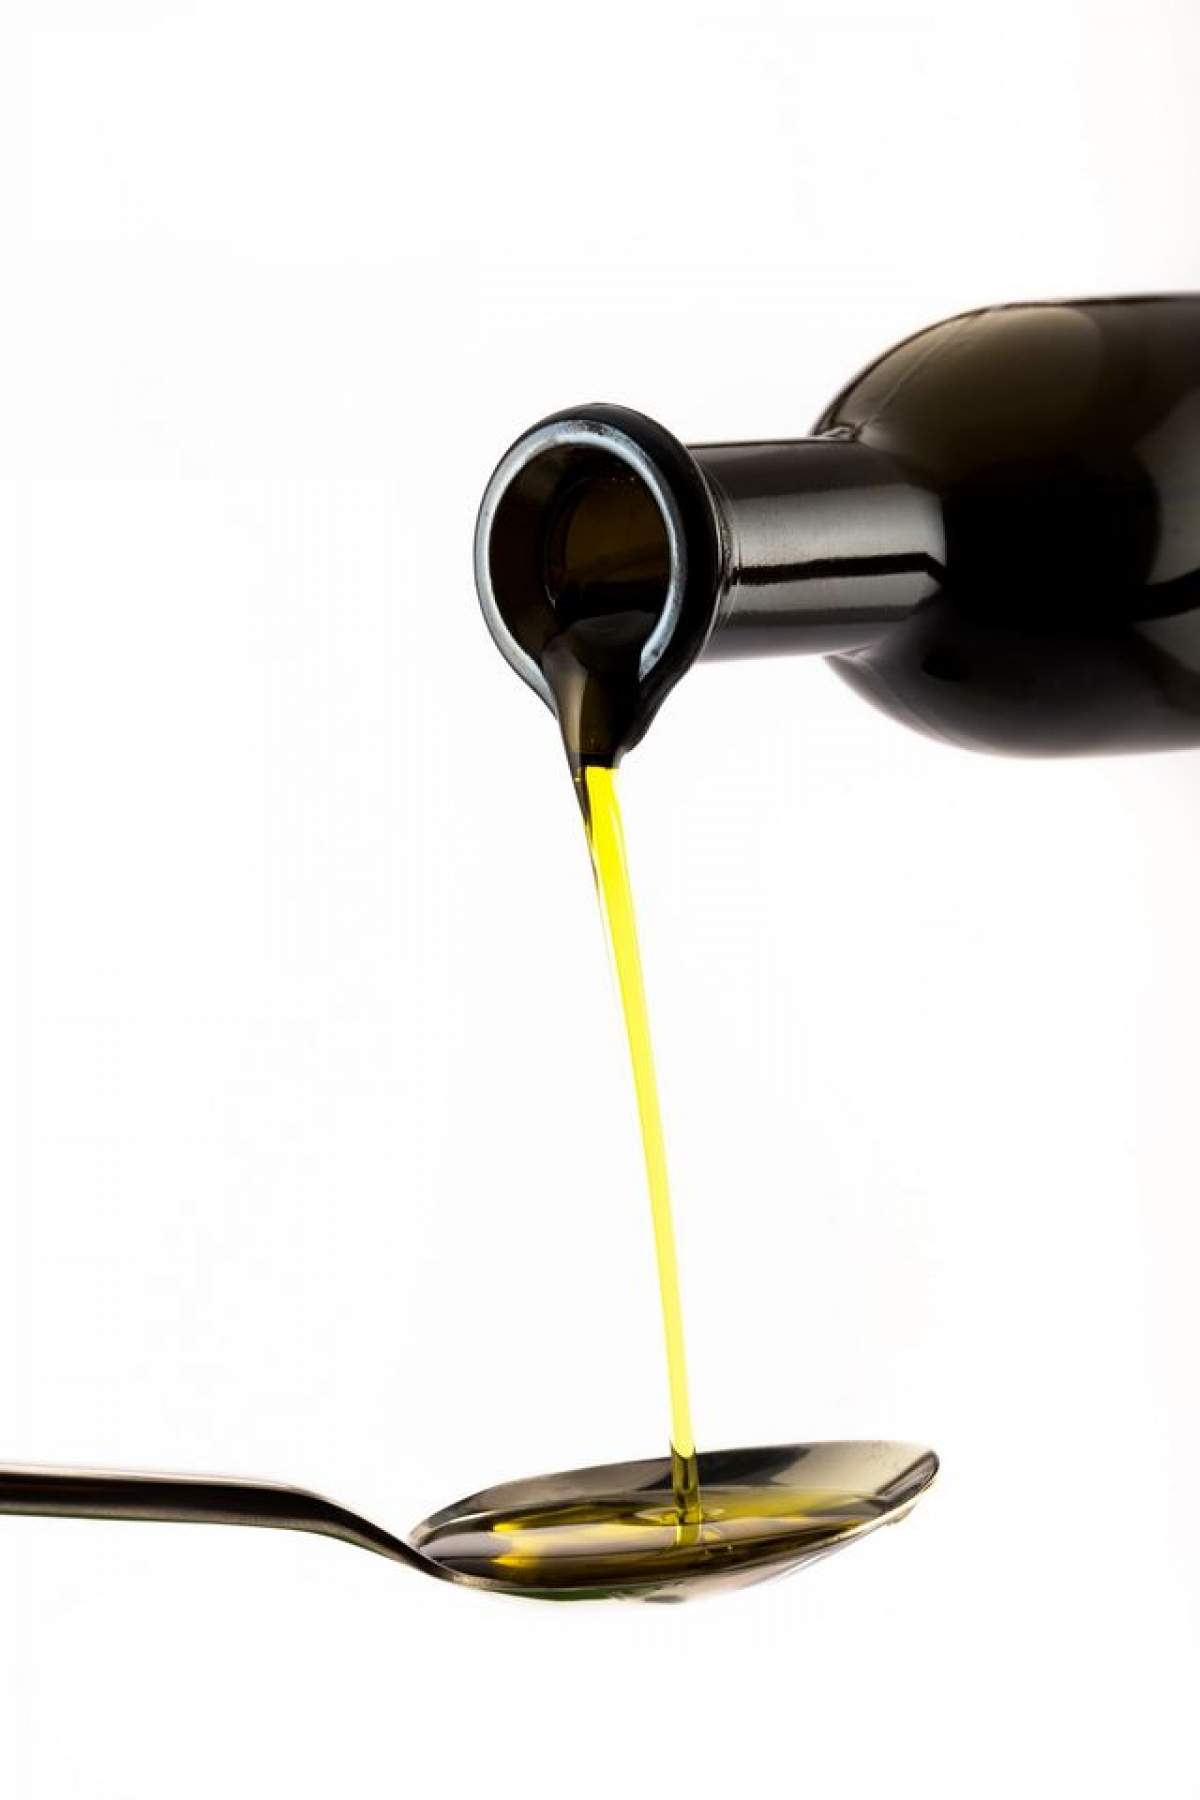 ÎNTREBAREA ZILEI - VINERI: Ce se întâmplă în organismul tău dacă amesteci sare cu ulei de măsline?